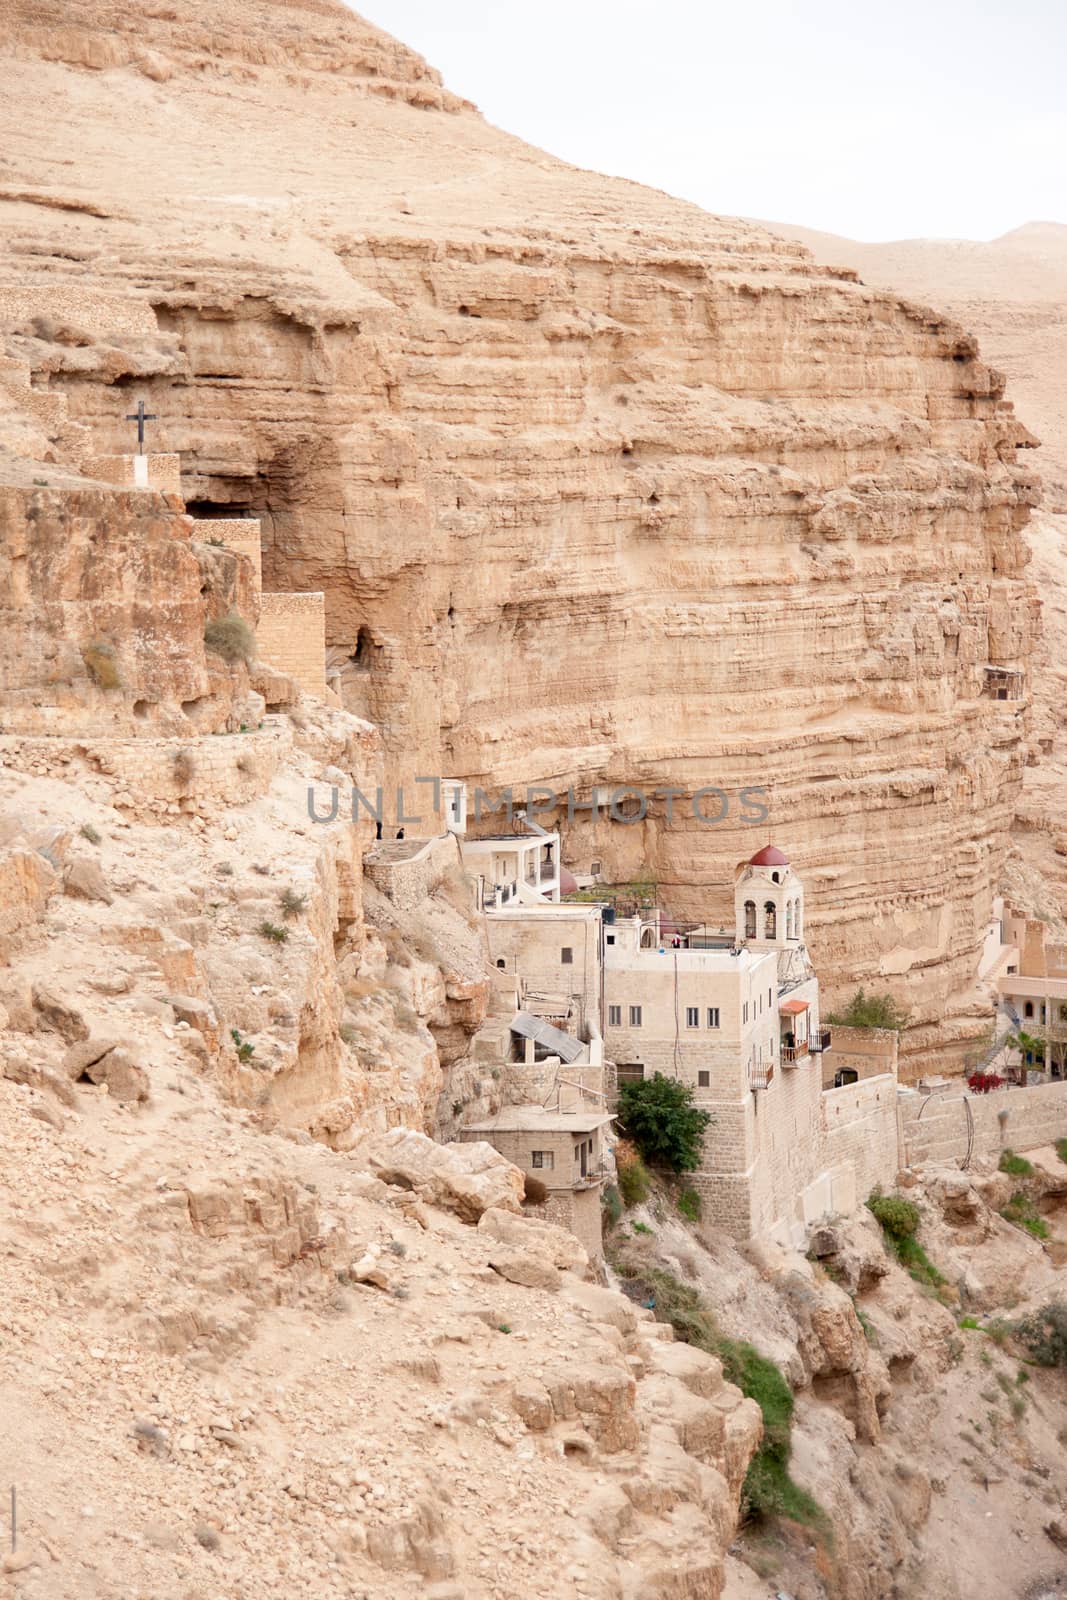 Saint George monastery in judean desert by javax